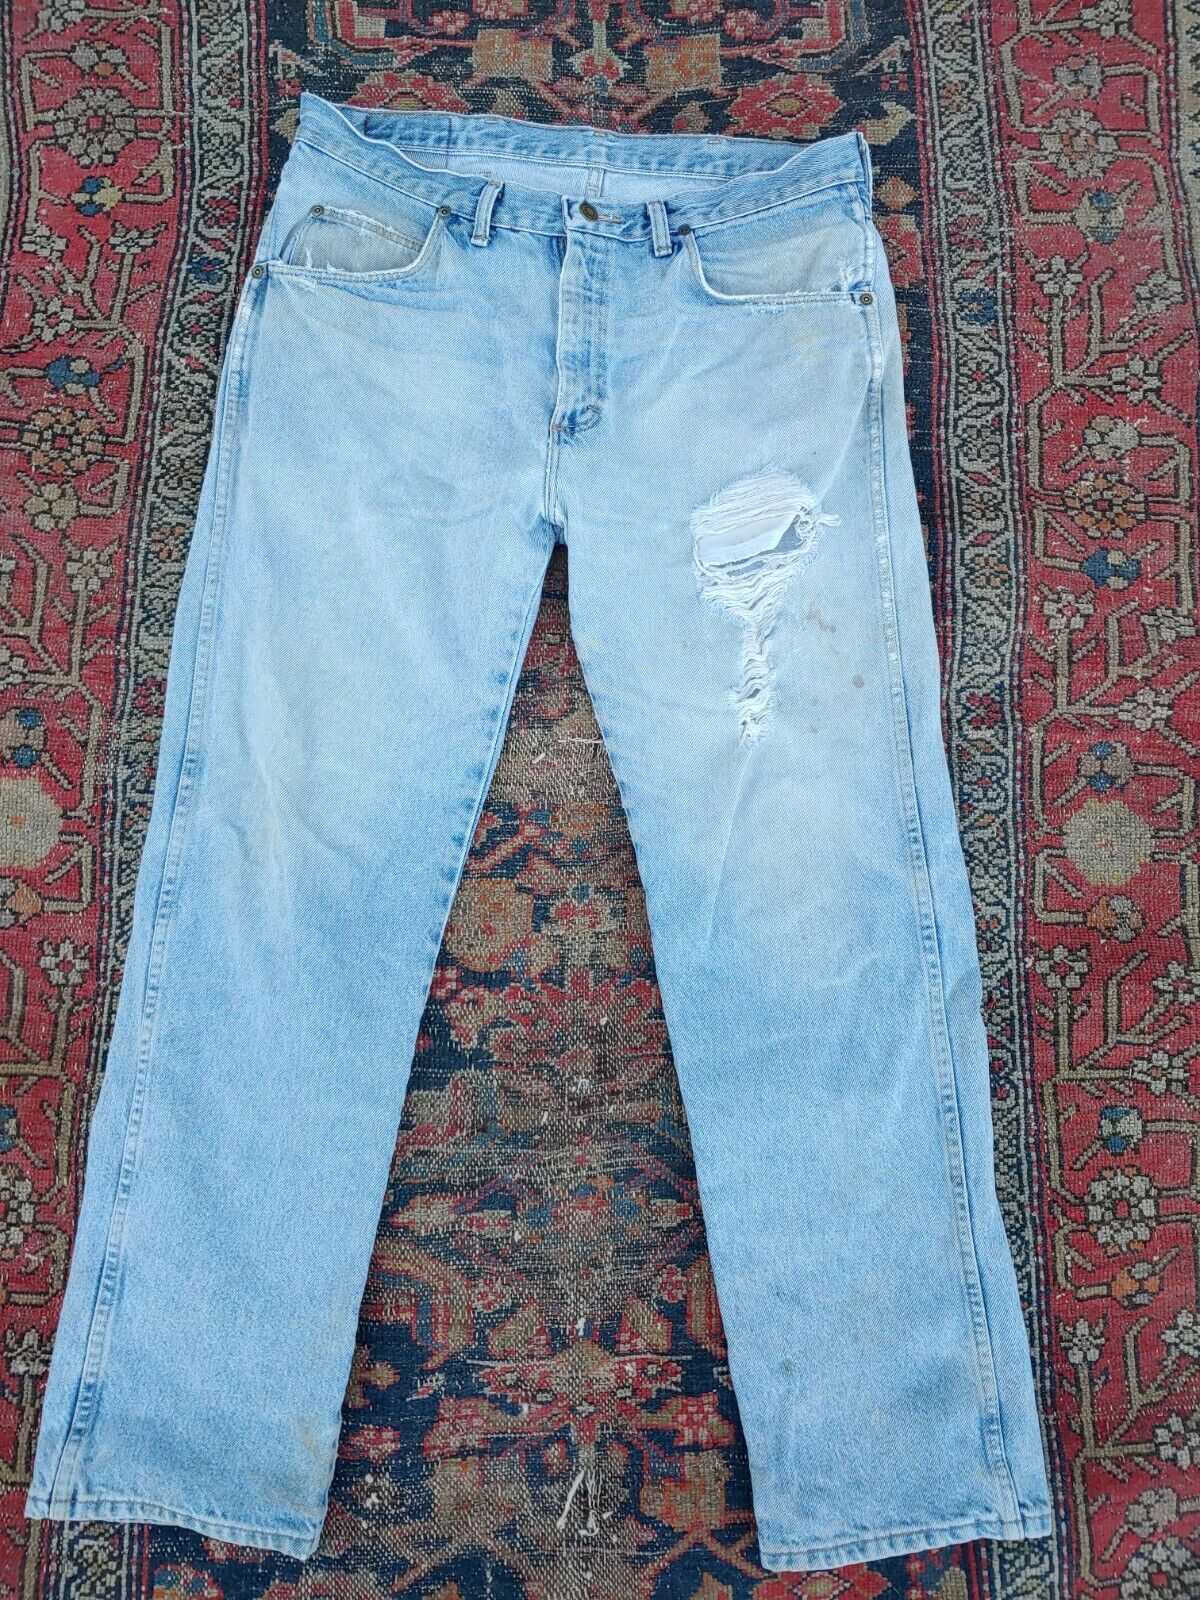 Vintage 1990s Wrangler Worn Out Denim Work Blue Jeans 36x29 Holes Thrashed  Wear